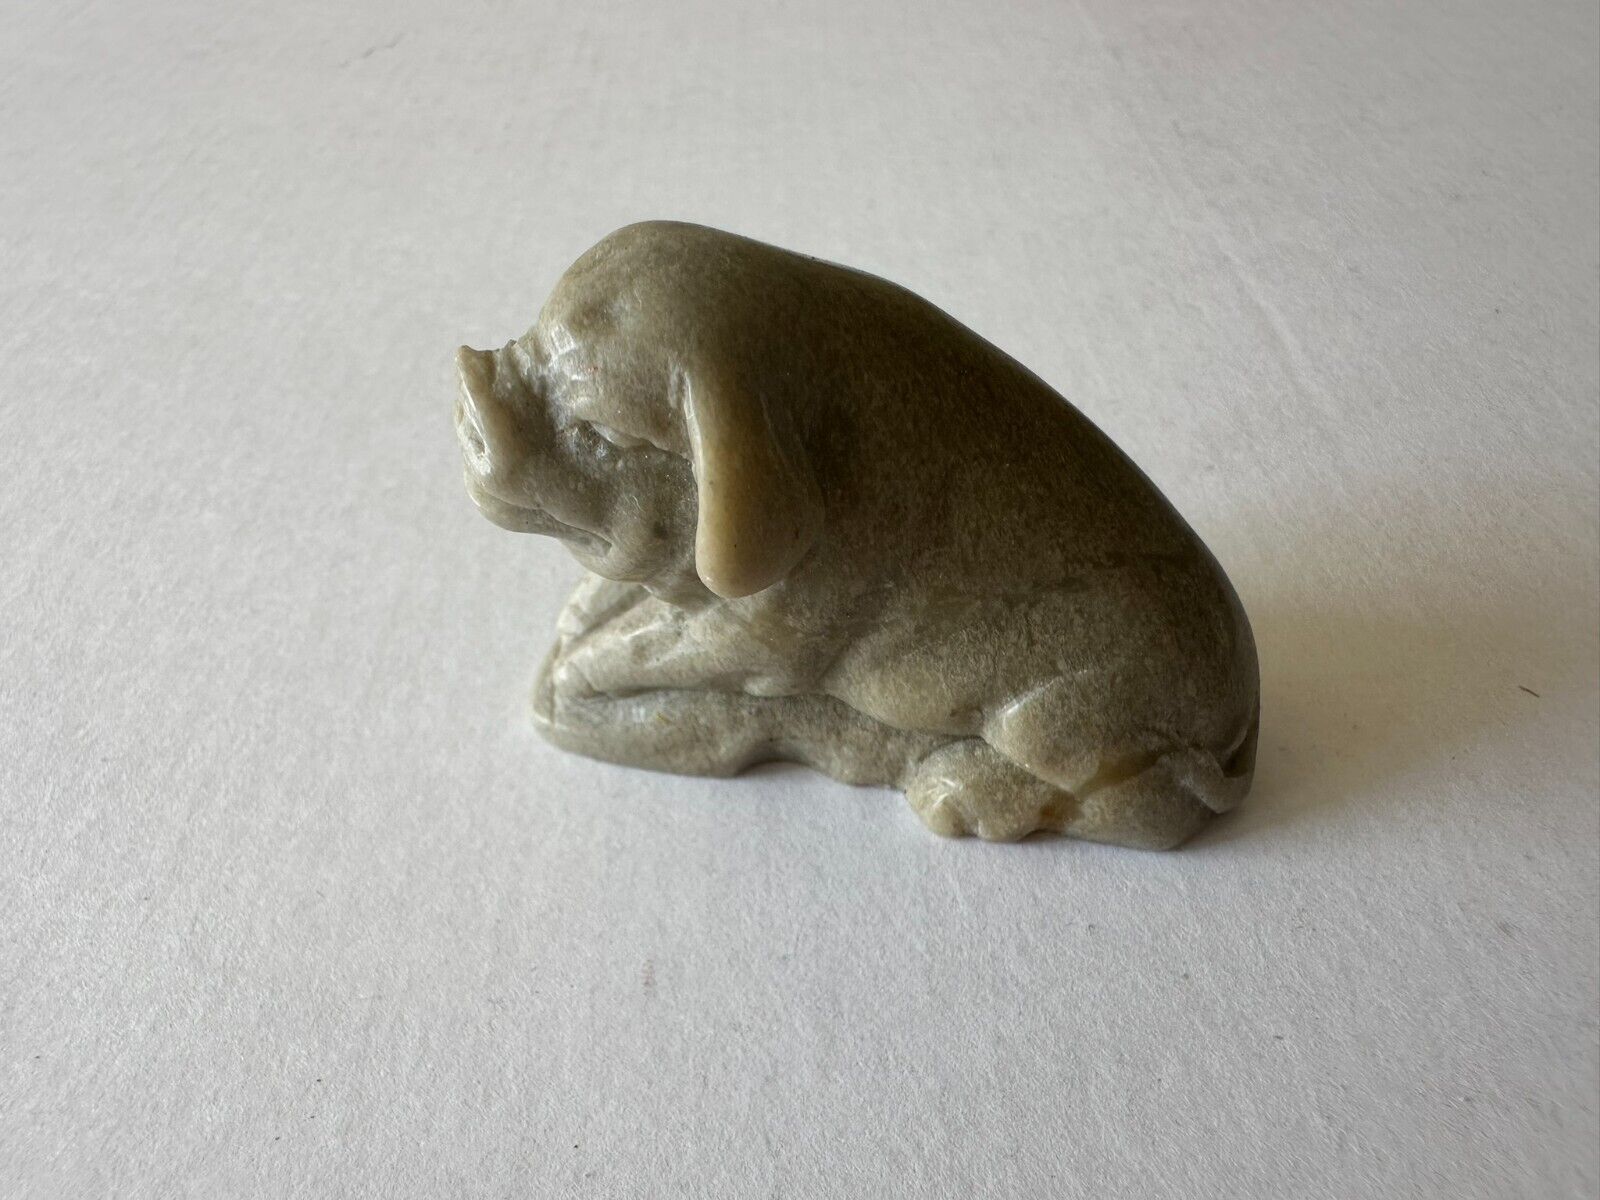 Antique miniature pig statuette sculpture pale moss colored